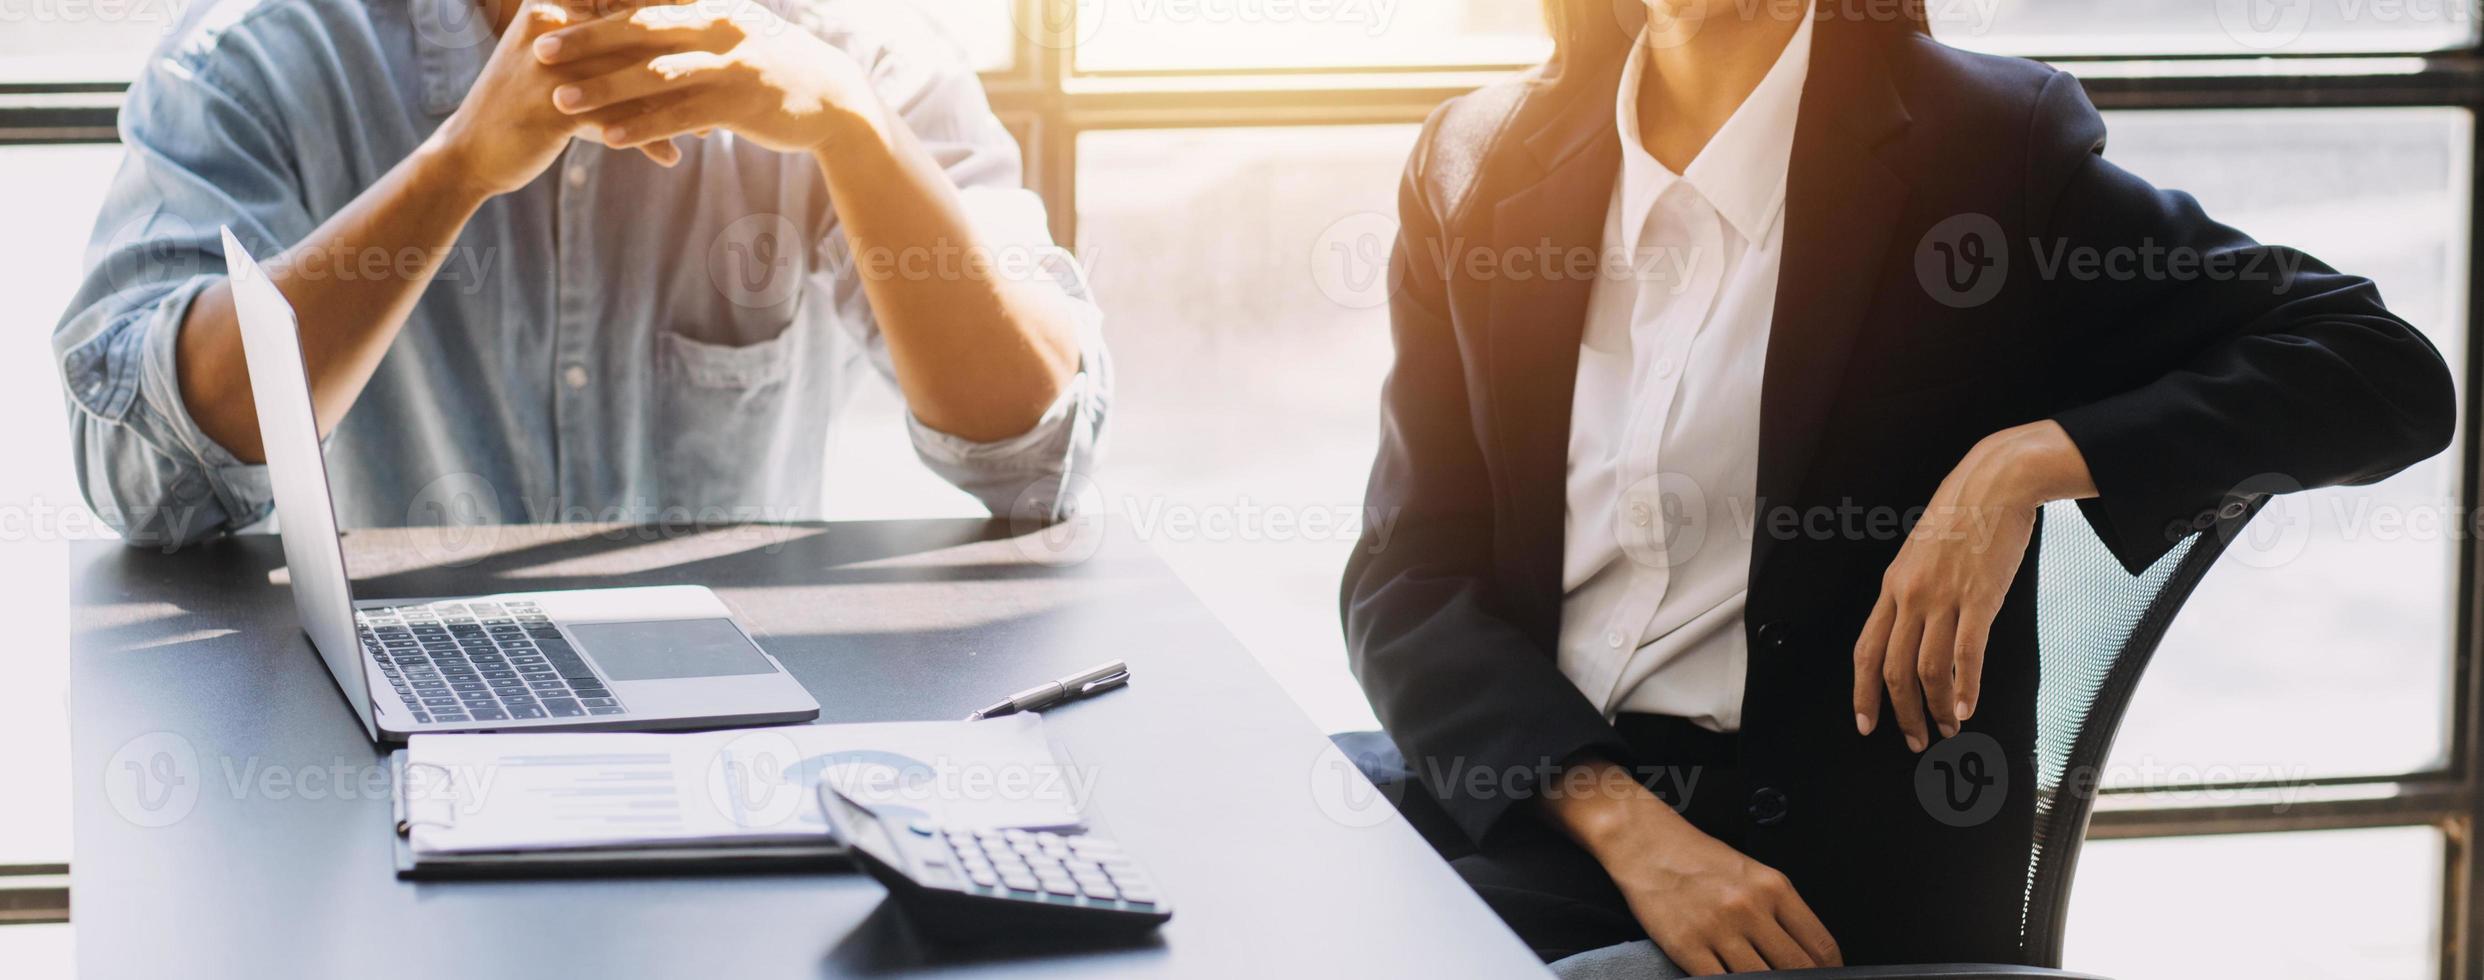 femme d'affaires asiatique utilisant une calculatrice et un ordinateur portable pour faire des finances mathématiques sur un bureau, fiscalité, rapport, comptabilité, statistiques et concept de recherche analytique photo